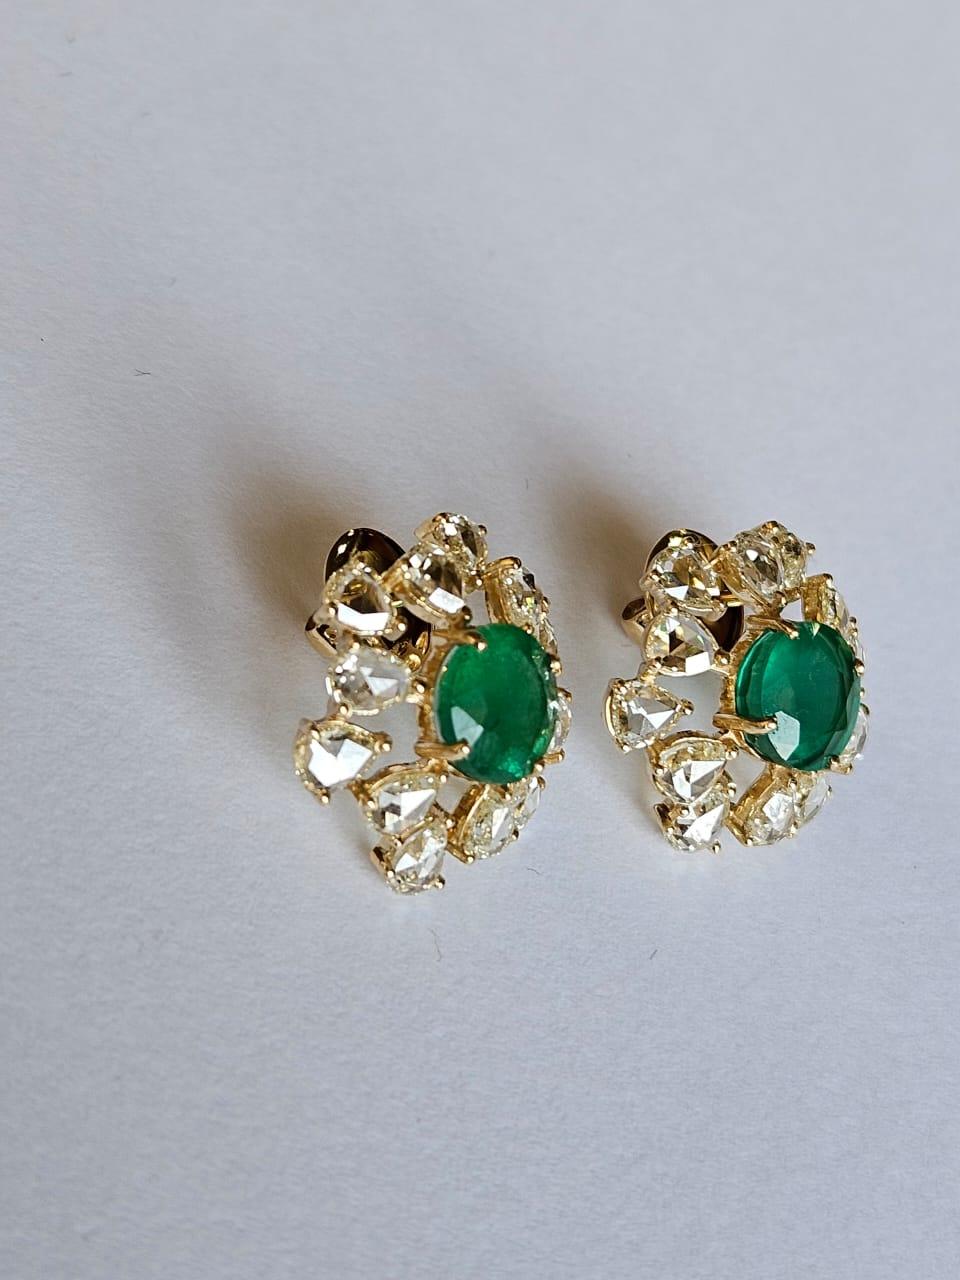 Set in 18K Gold, 4.86 carats, Zambian Emerald & Rose Cut Diamonds Stud Earrings For Sale 3